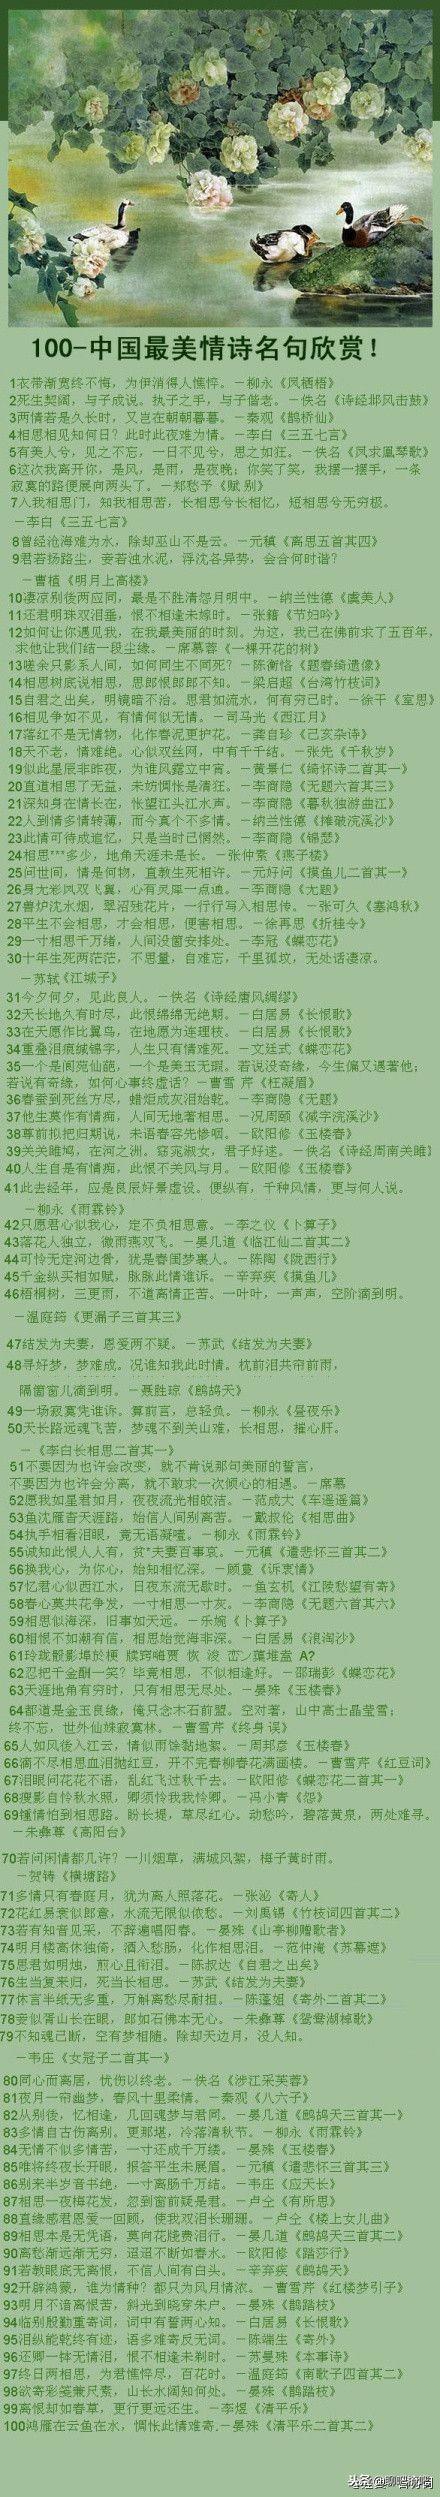 100个中国最美的情诗名句欣赏